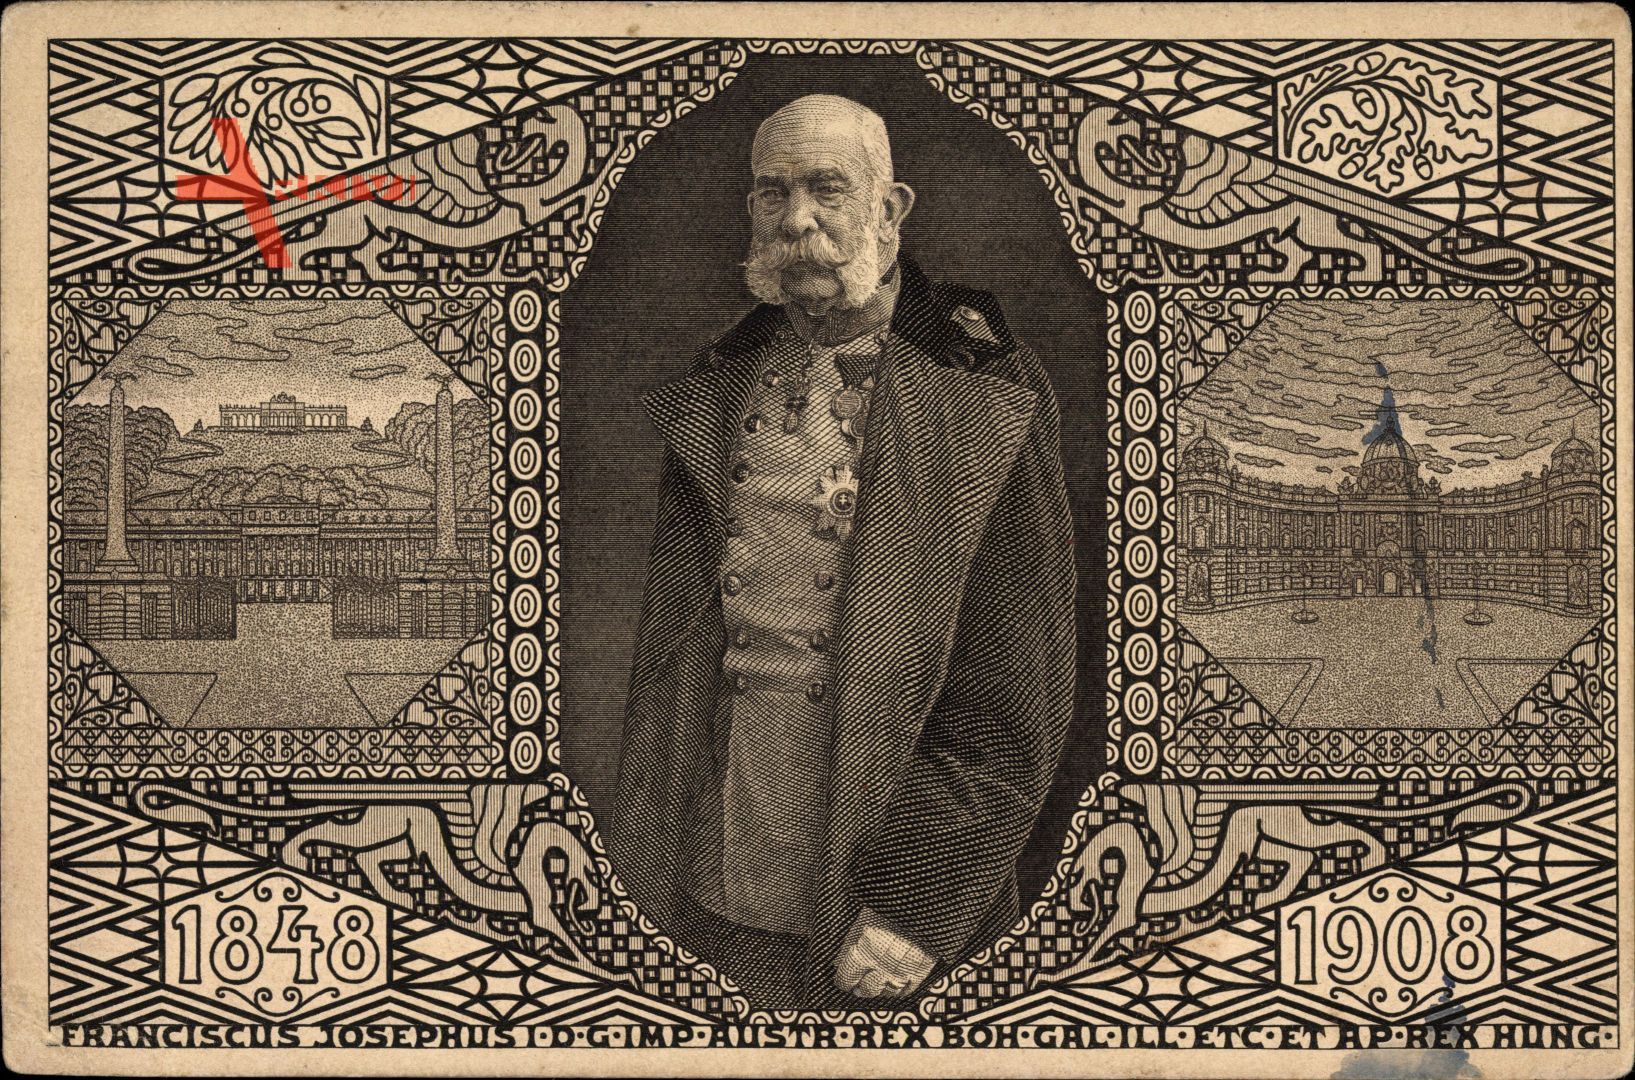 Ganzsachen Kaiser Franz Joseph I., Jubiläums Postkarte 1848 1908